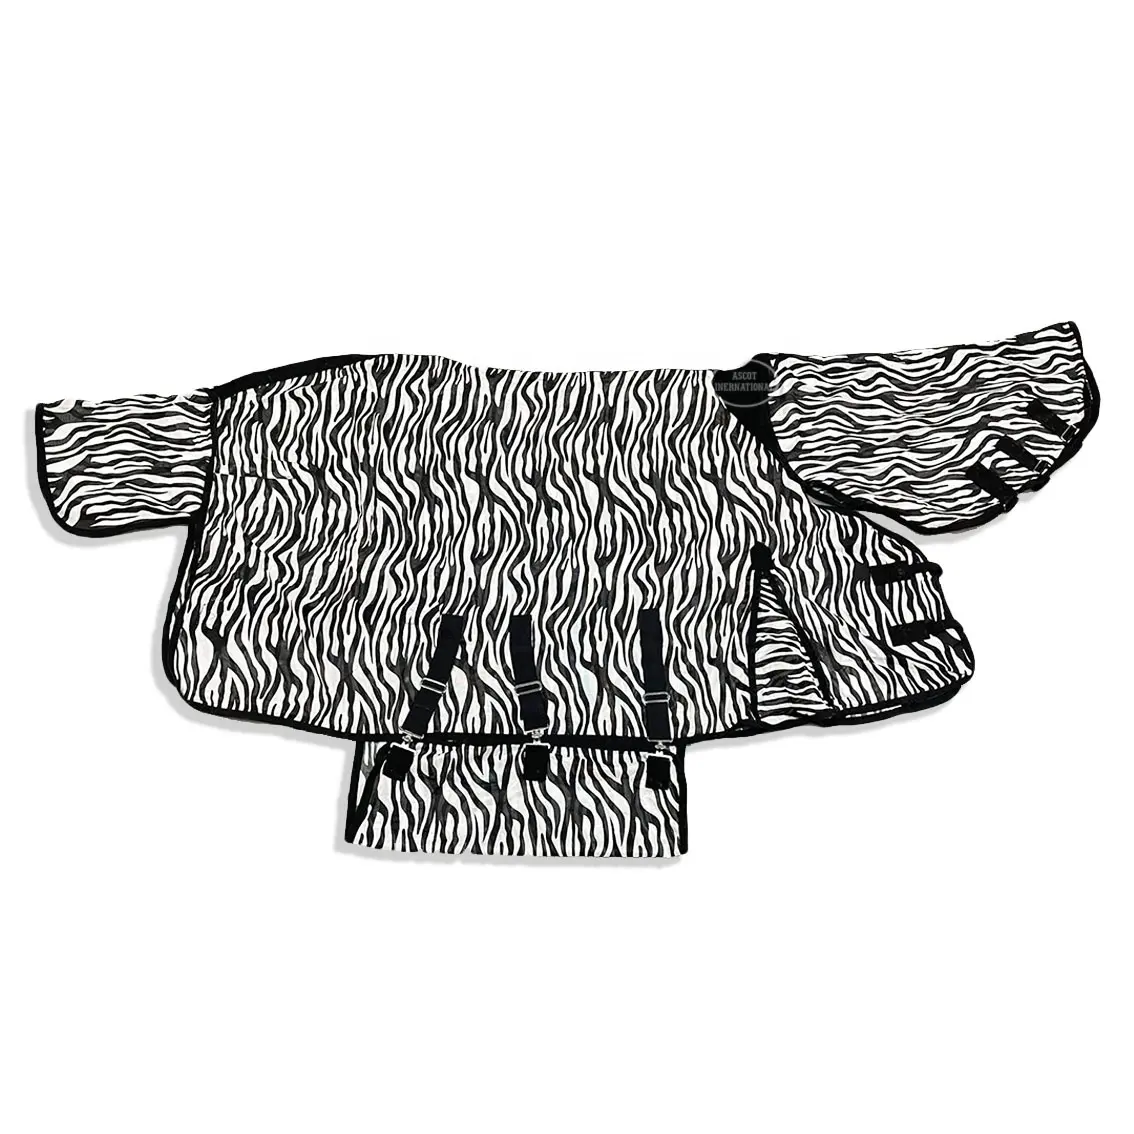 Cavallo inverno affluenza tappeto zebra mesh print tail belly neck guard poliestere cotone abbigliamento equestre attrezzatura per cavalli all'ingrosso